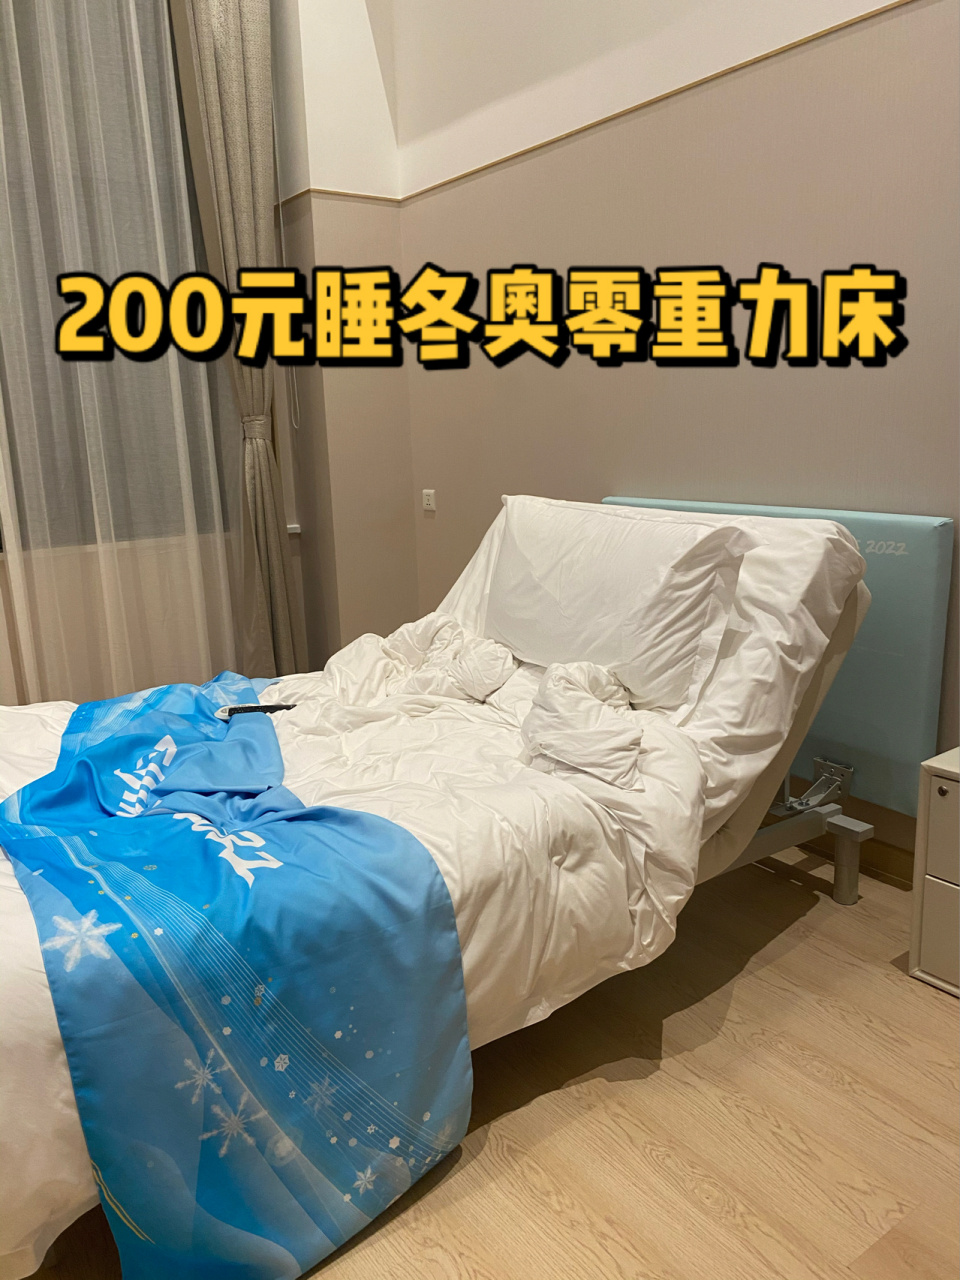 北京冬奥村这床 我能躺一天 97位于延庆的冬奥村目前改建为度假酒店